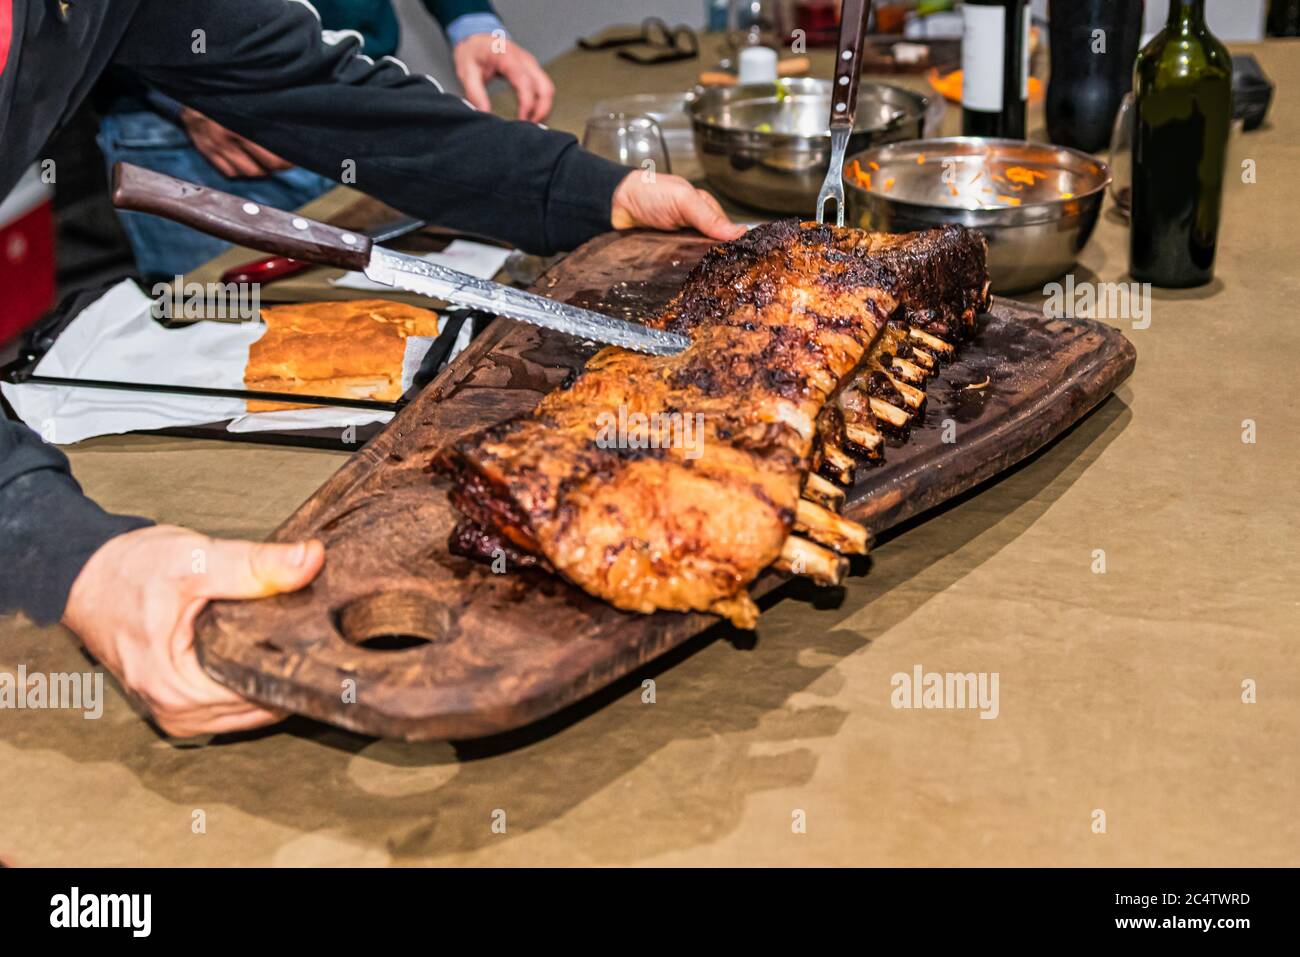 Parrillada' Argentinischer Grill auf Live-Kohle (keine Flamme), Rindfleisch  'Asado', Brot, 'Chorizo' und gegrillte Rippchen mit einem heißen Rack,  Nahaufnahme, Fokus se Stockfotografie - Alamy